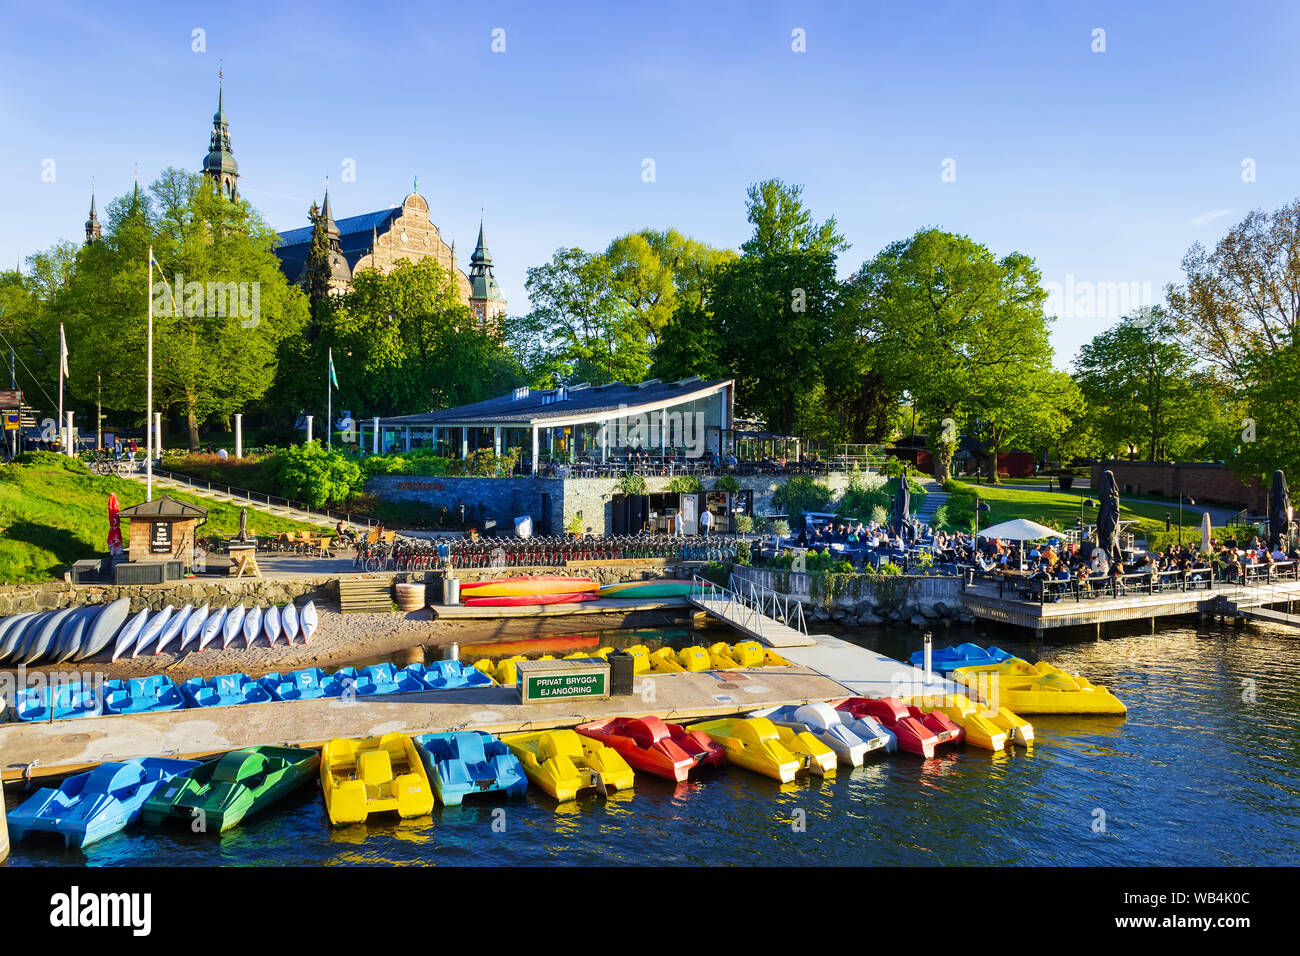 Quais flottants bondés-restaurants et location de matériel de sports de kayak.Ostermalmstorg.Site du musée nordique en arrière-plan.Stockholm, Suède. Banque D'Images